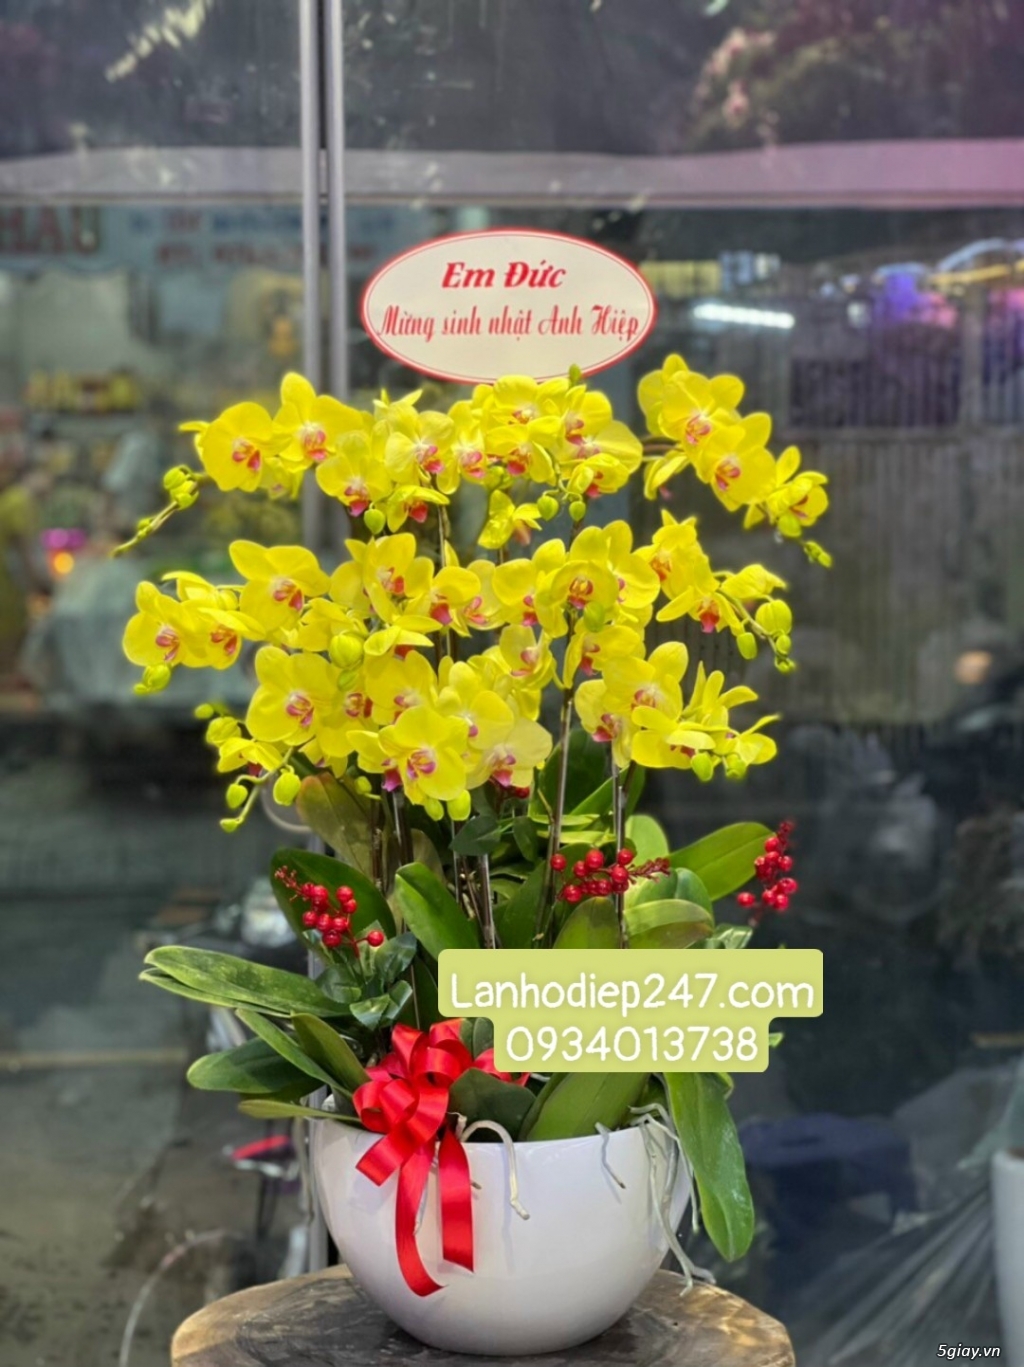 Shop hoa tươi 247 chuyên cung cấp lan hồ điệp tại tphcm 0934013738 - 4